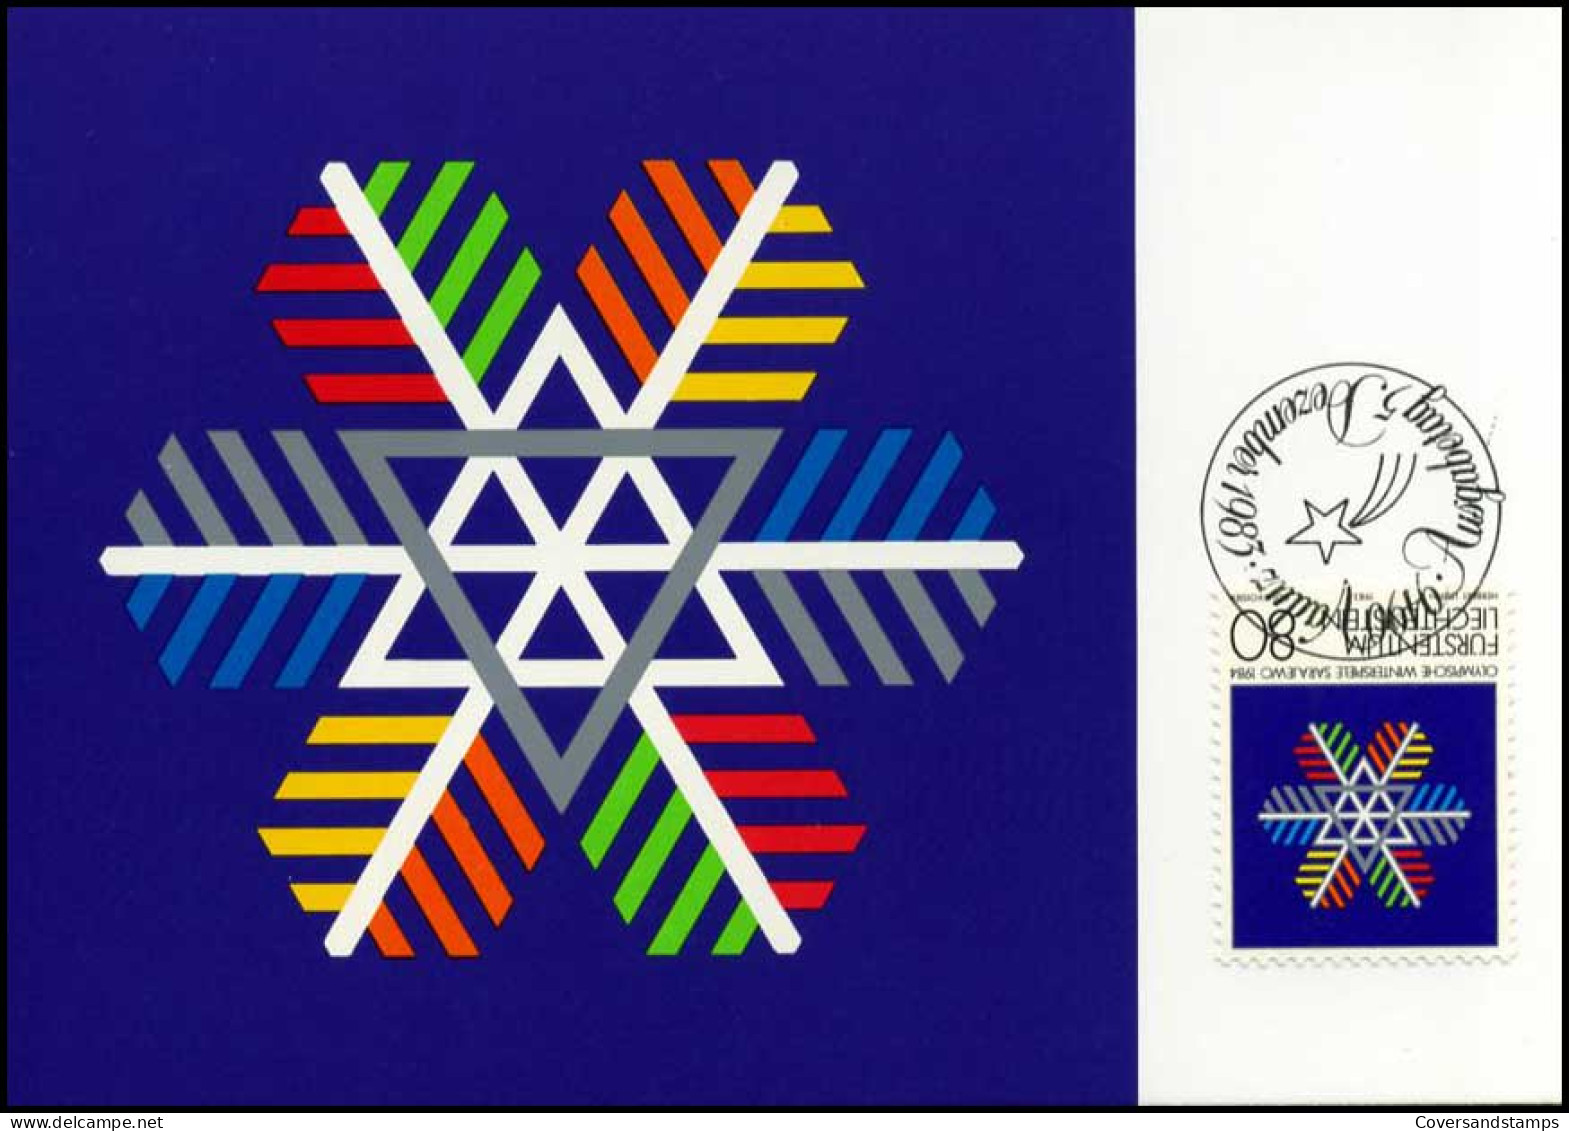  Liechtenstein - MK -  Olympische Winterspiele Sarajewo 1984 - Cartes-Maximum (CM)